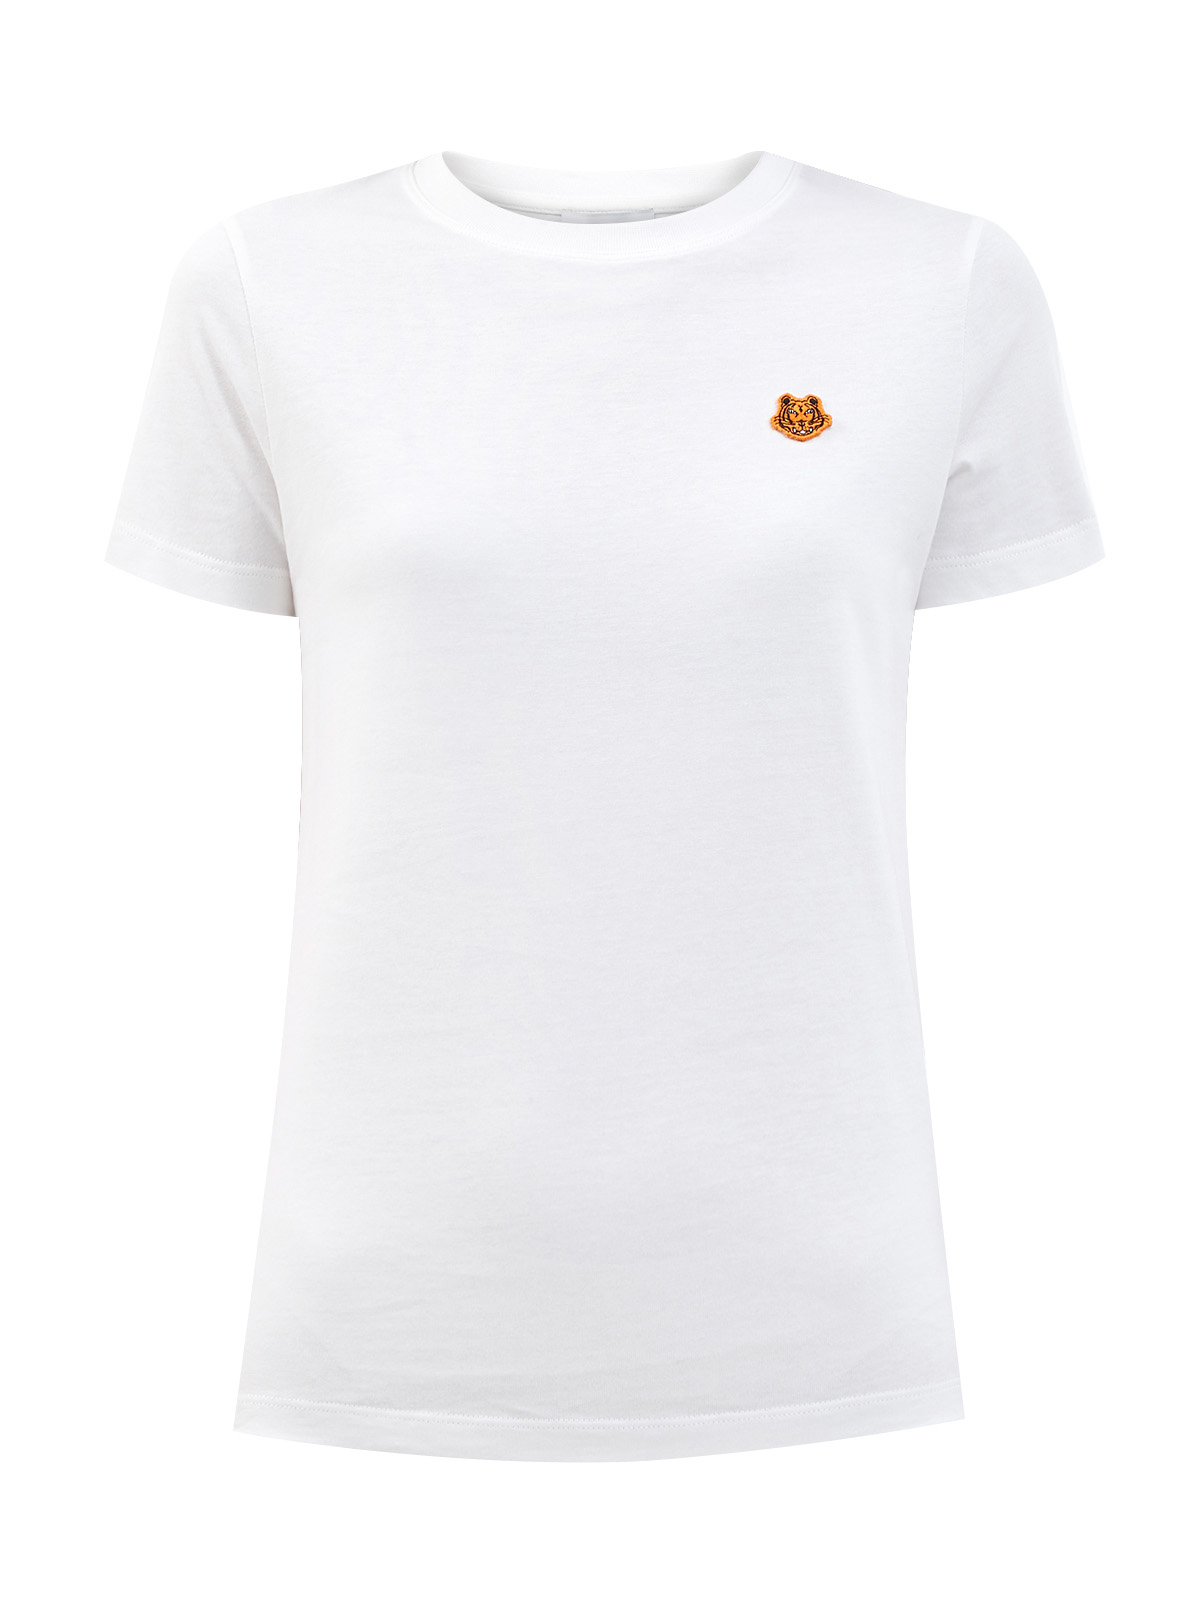 Хлопковая футболка из гладкого джерси с вышитой эмблемой бренда KENZO, цвет белый, размер M;L;XL;XS - фото 1